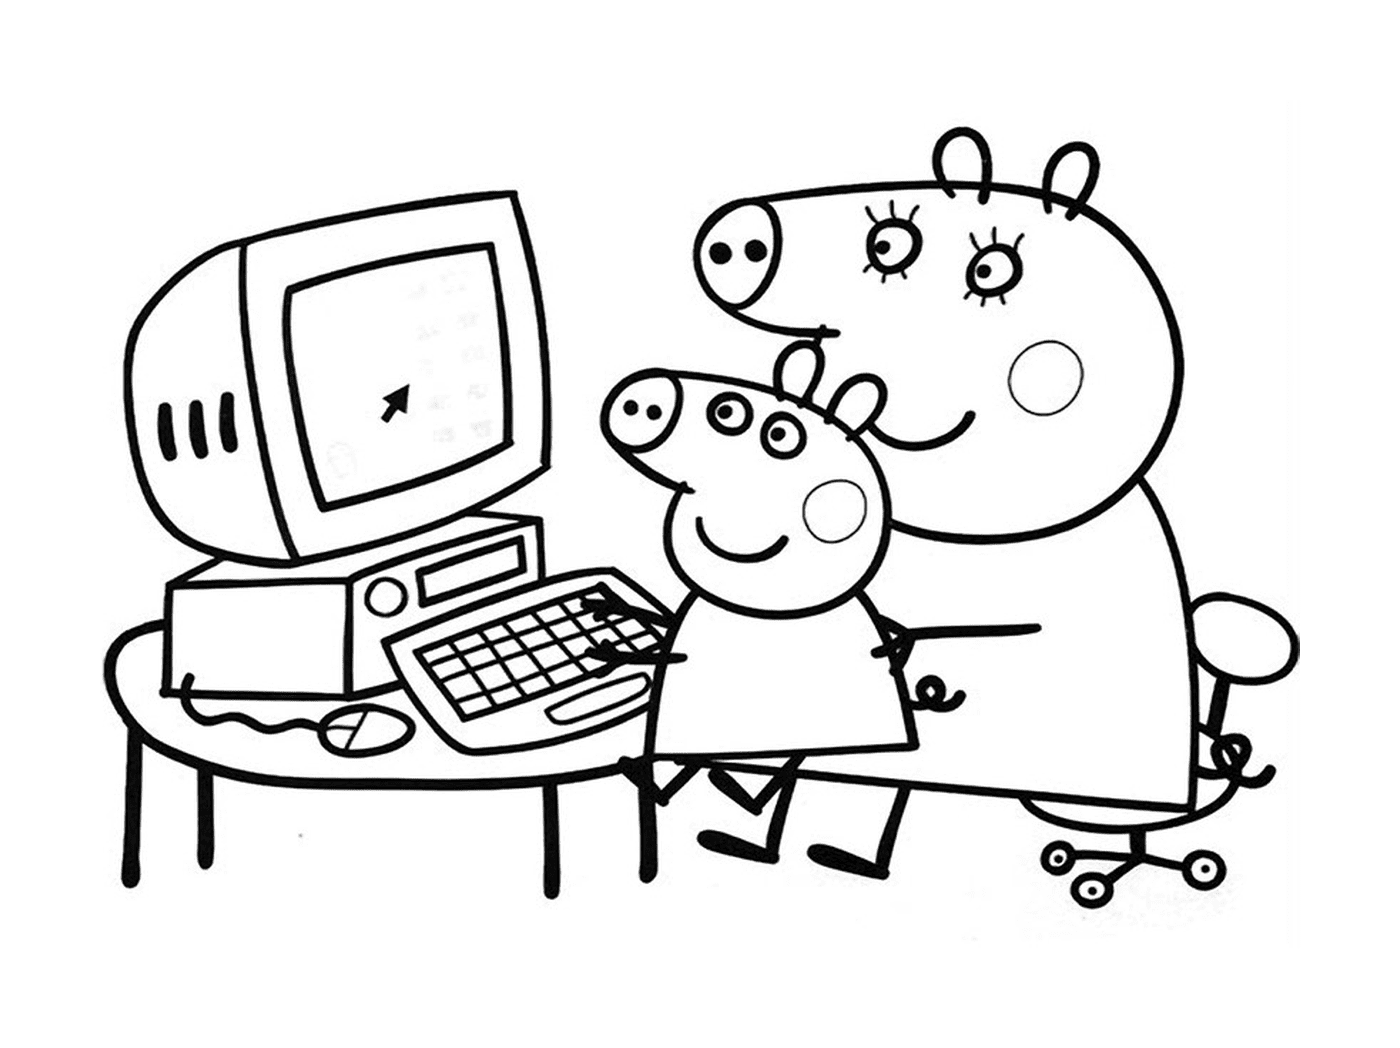  Peppa Pig und George Pig auf dem Computer 